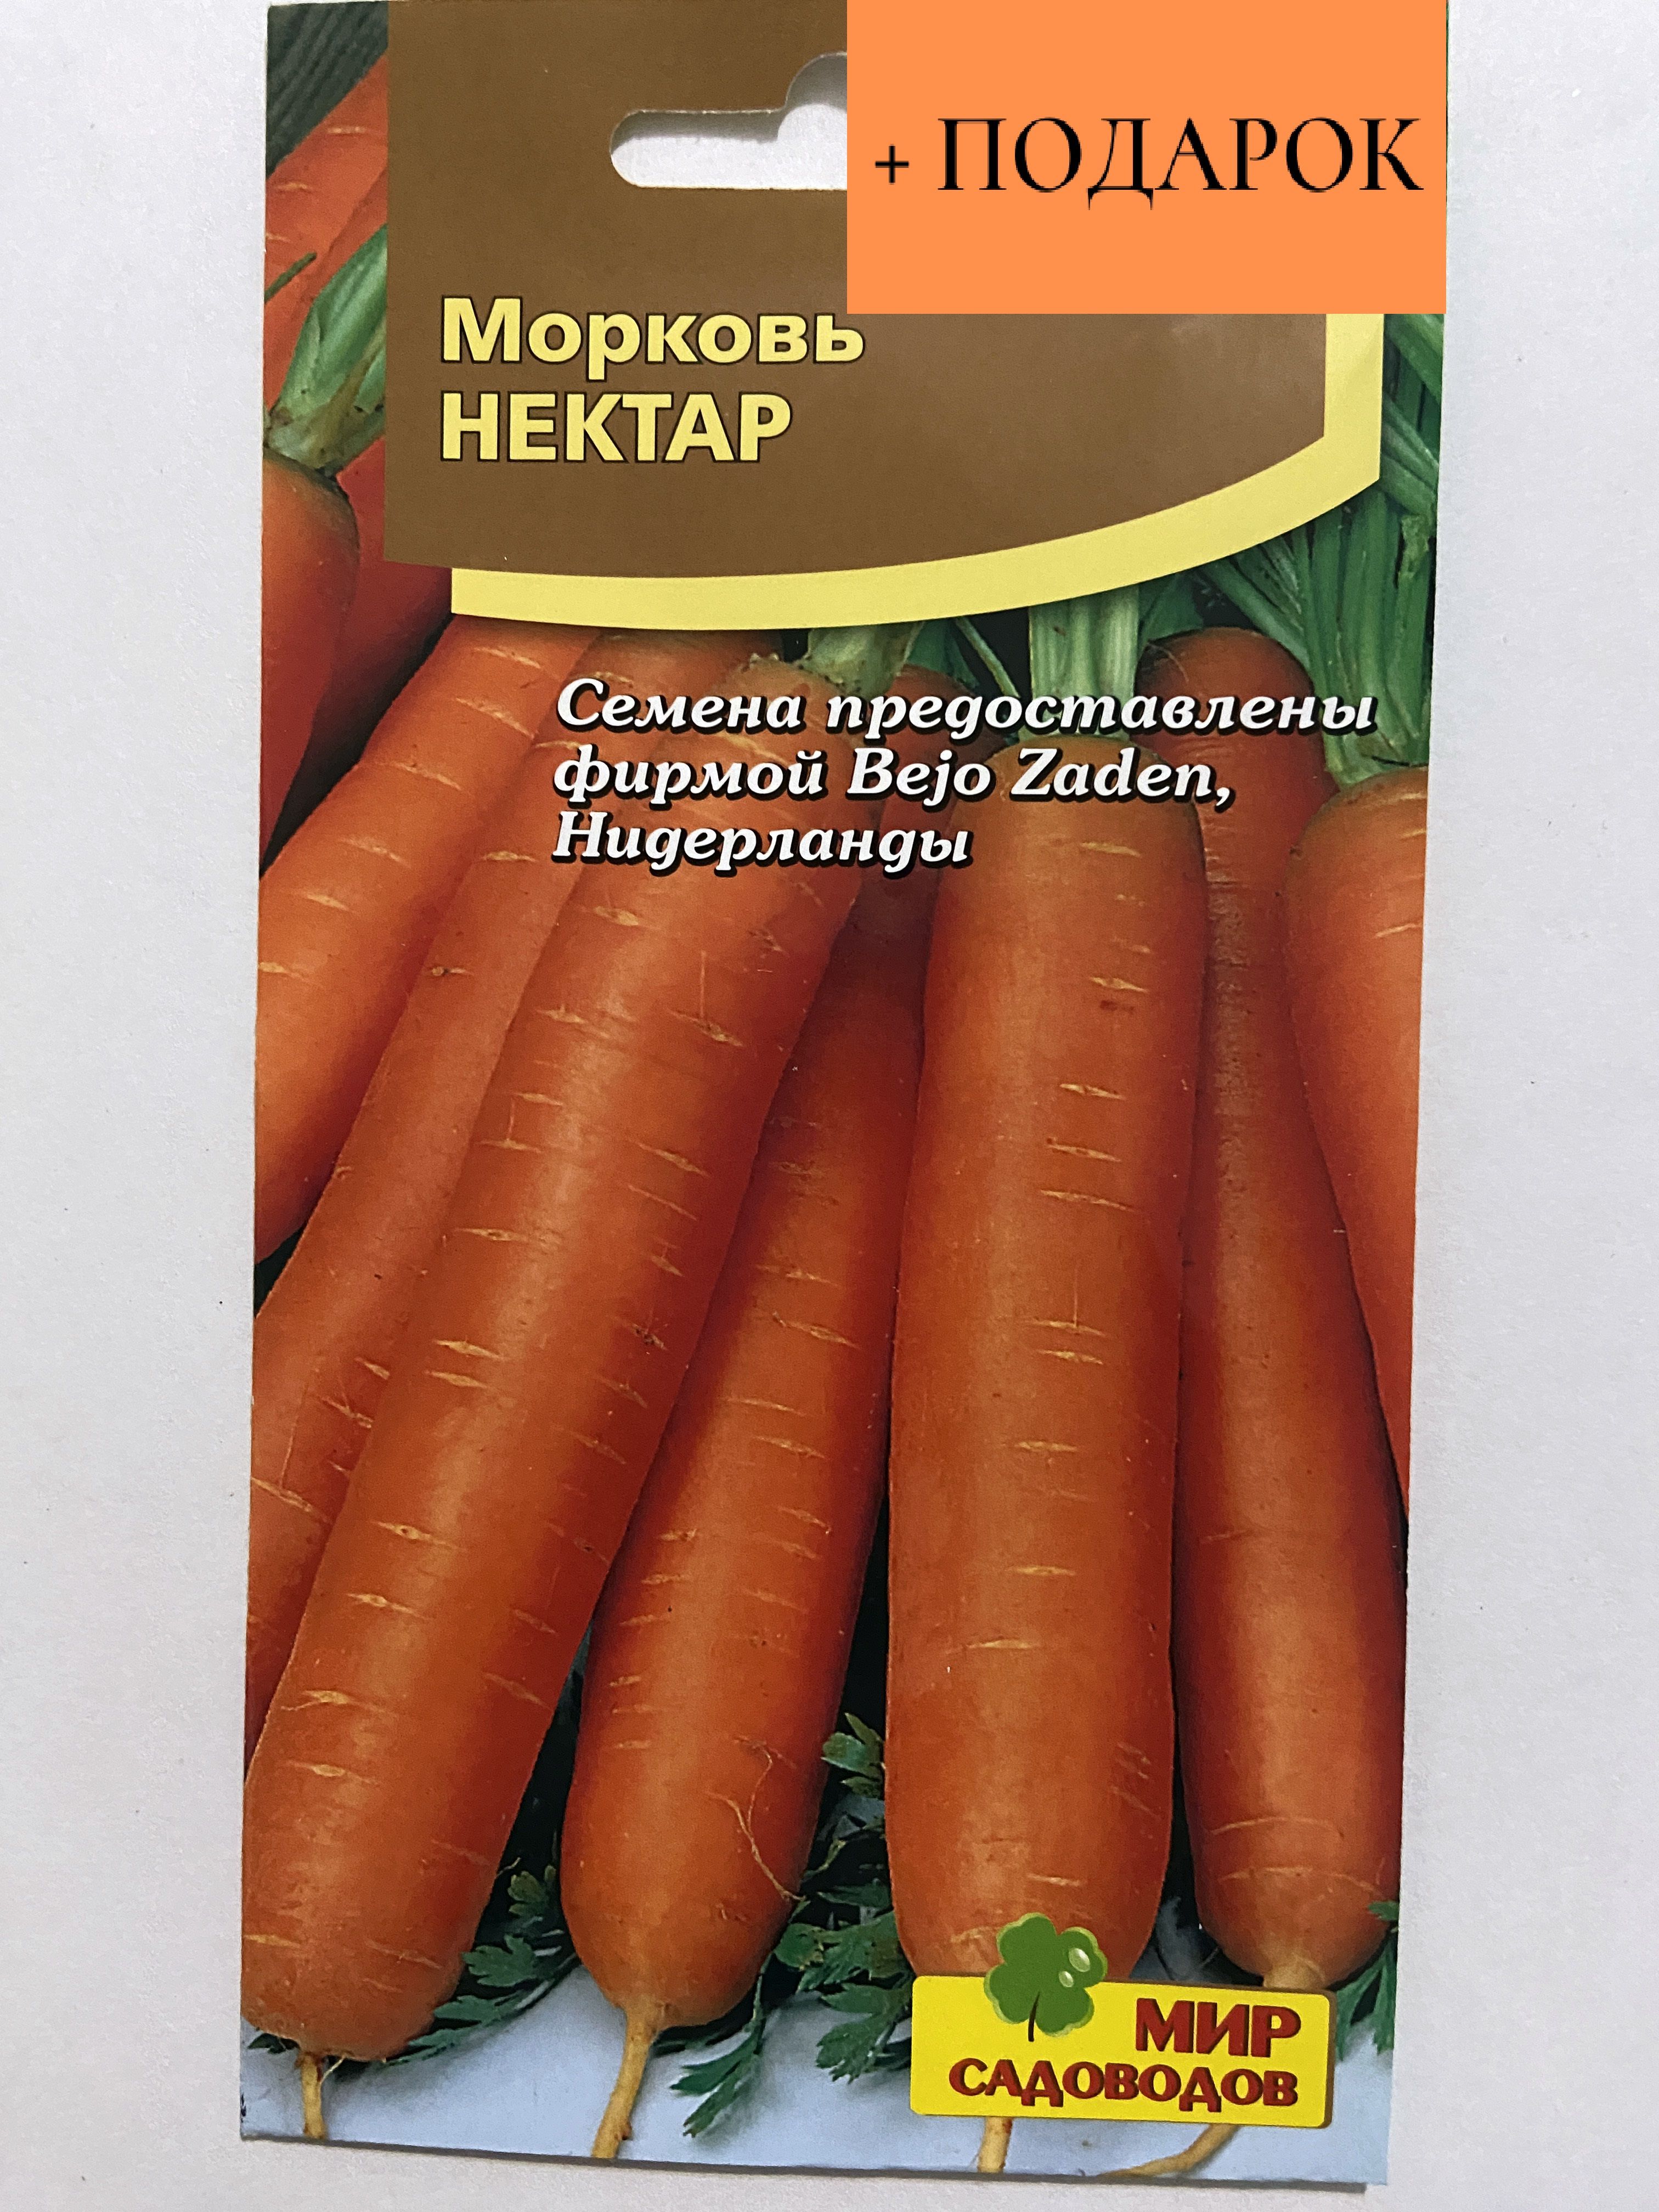 Морковь нектар. Морковь нектар f1. Морковь зимний нектар. Морковь дражированная нектар f1 (гл) /Агрико/ 100 шт. Семена Гавриш Bejo морковь нектар f1 150 шт..